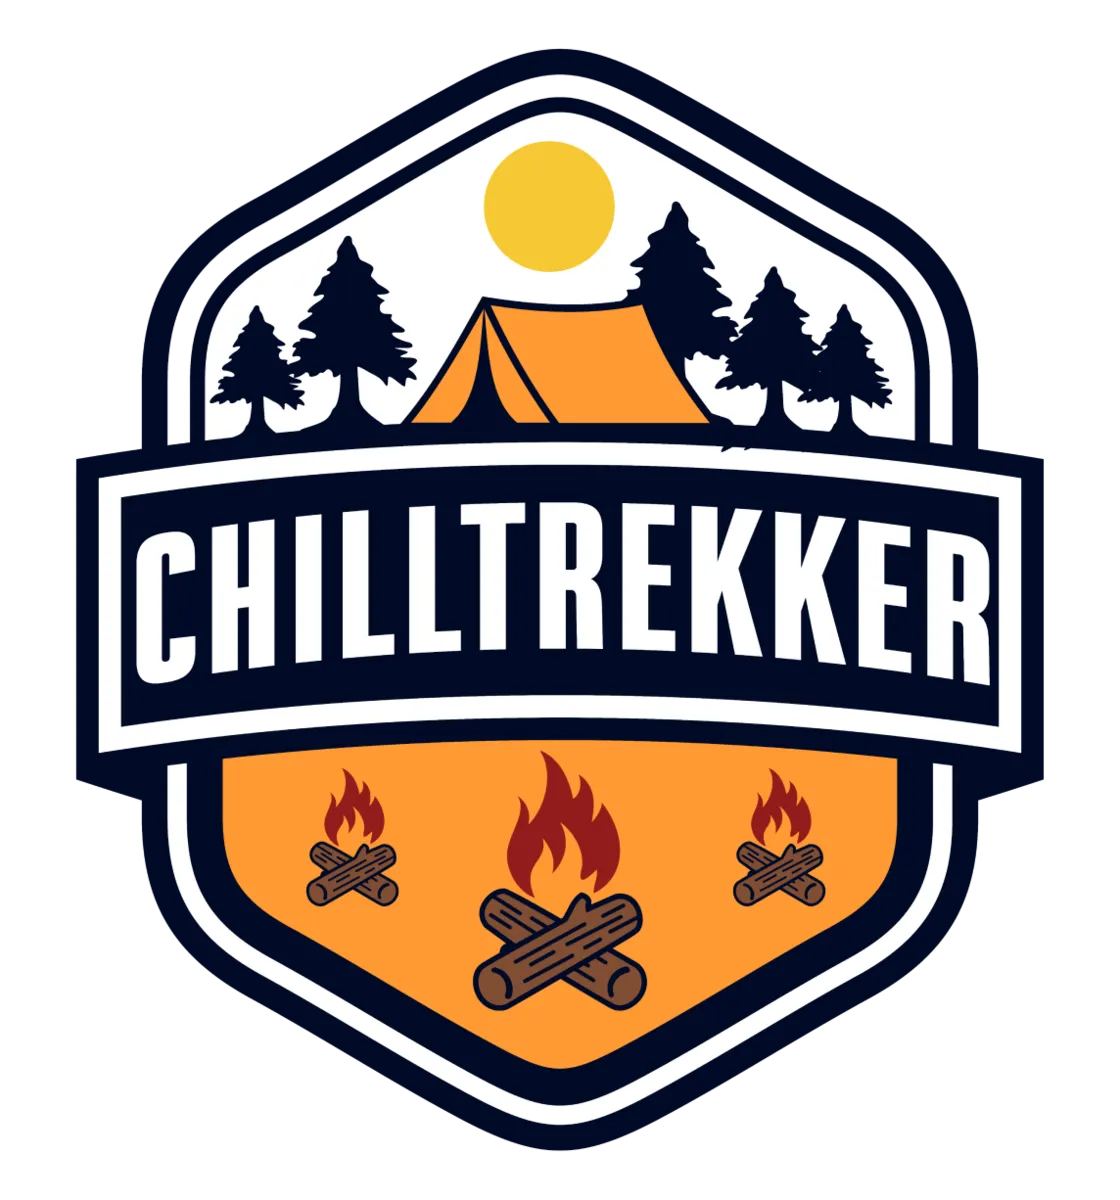 ChillTrekker